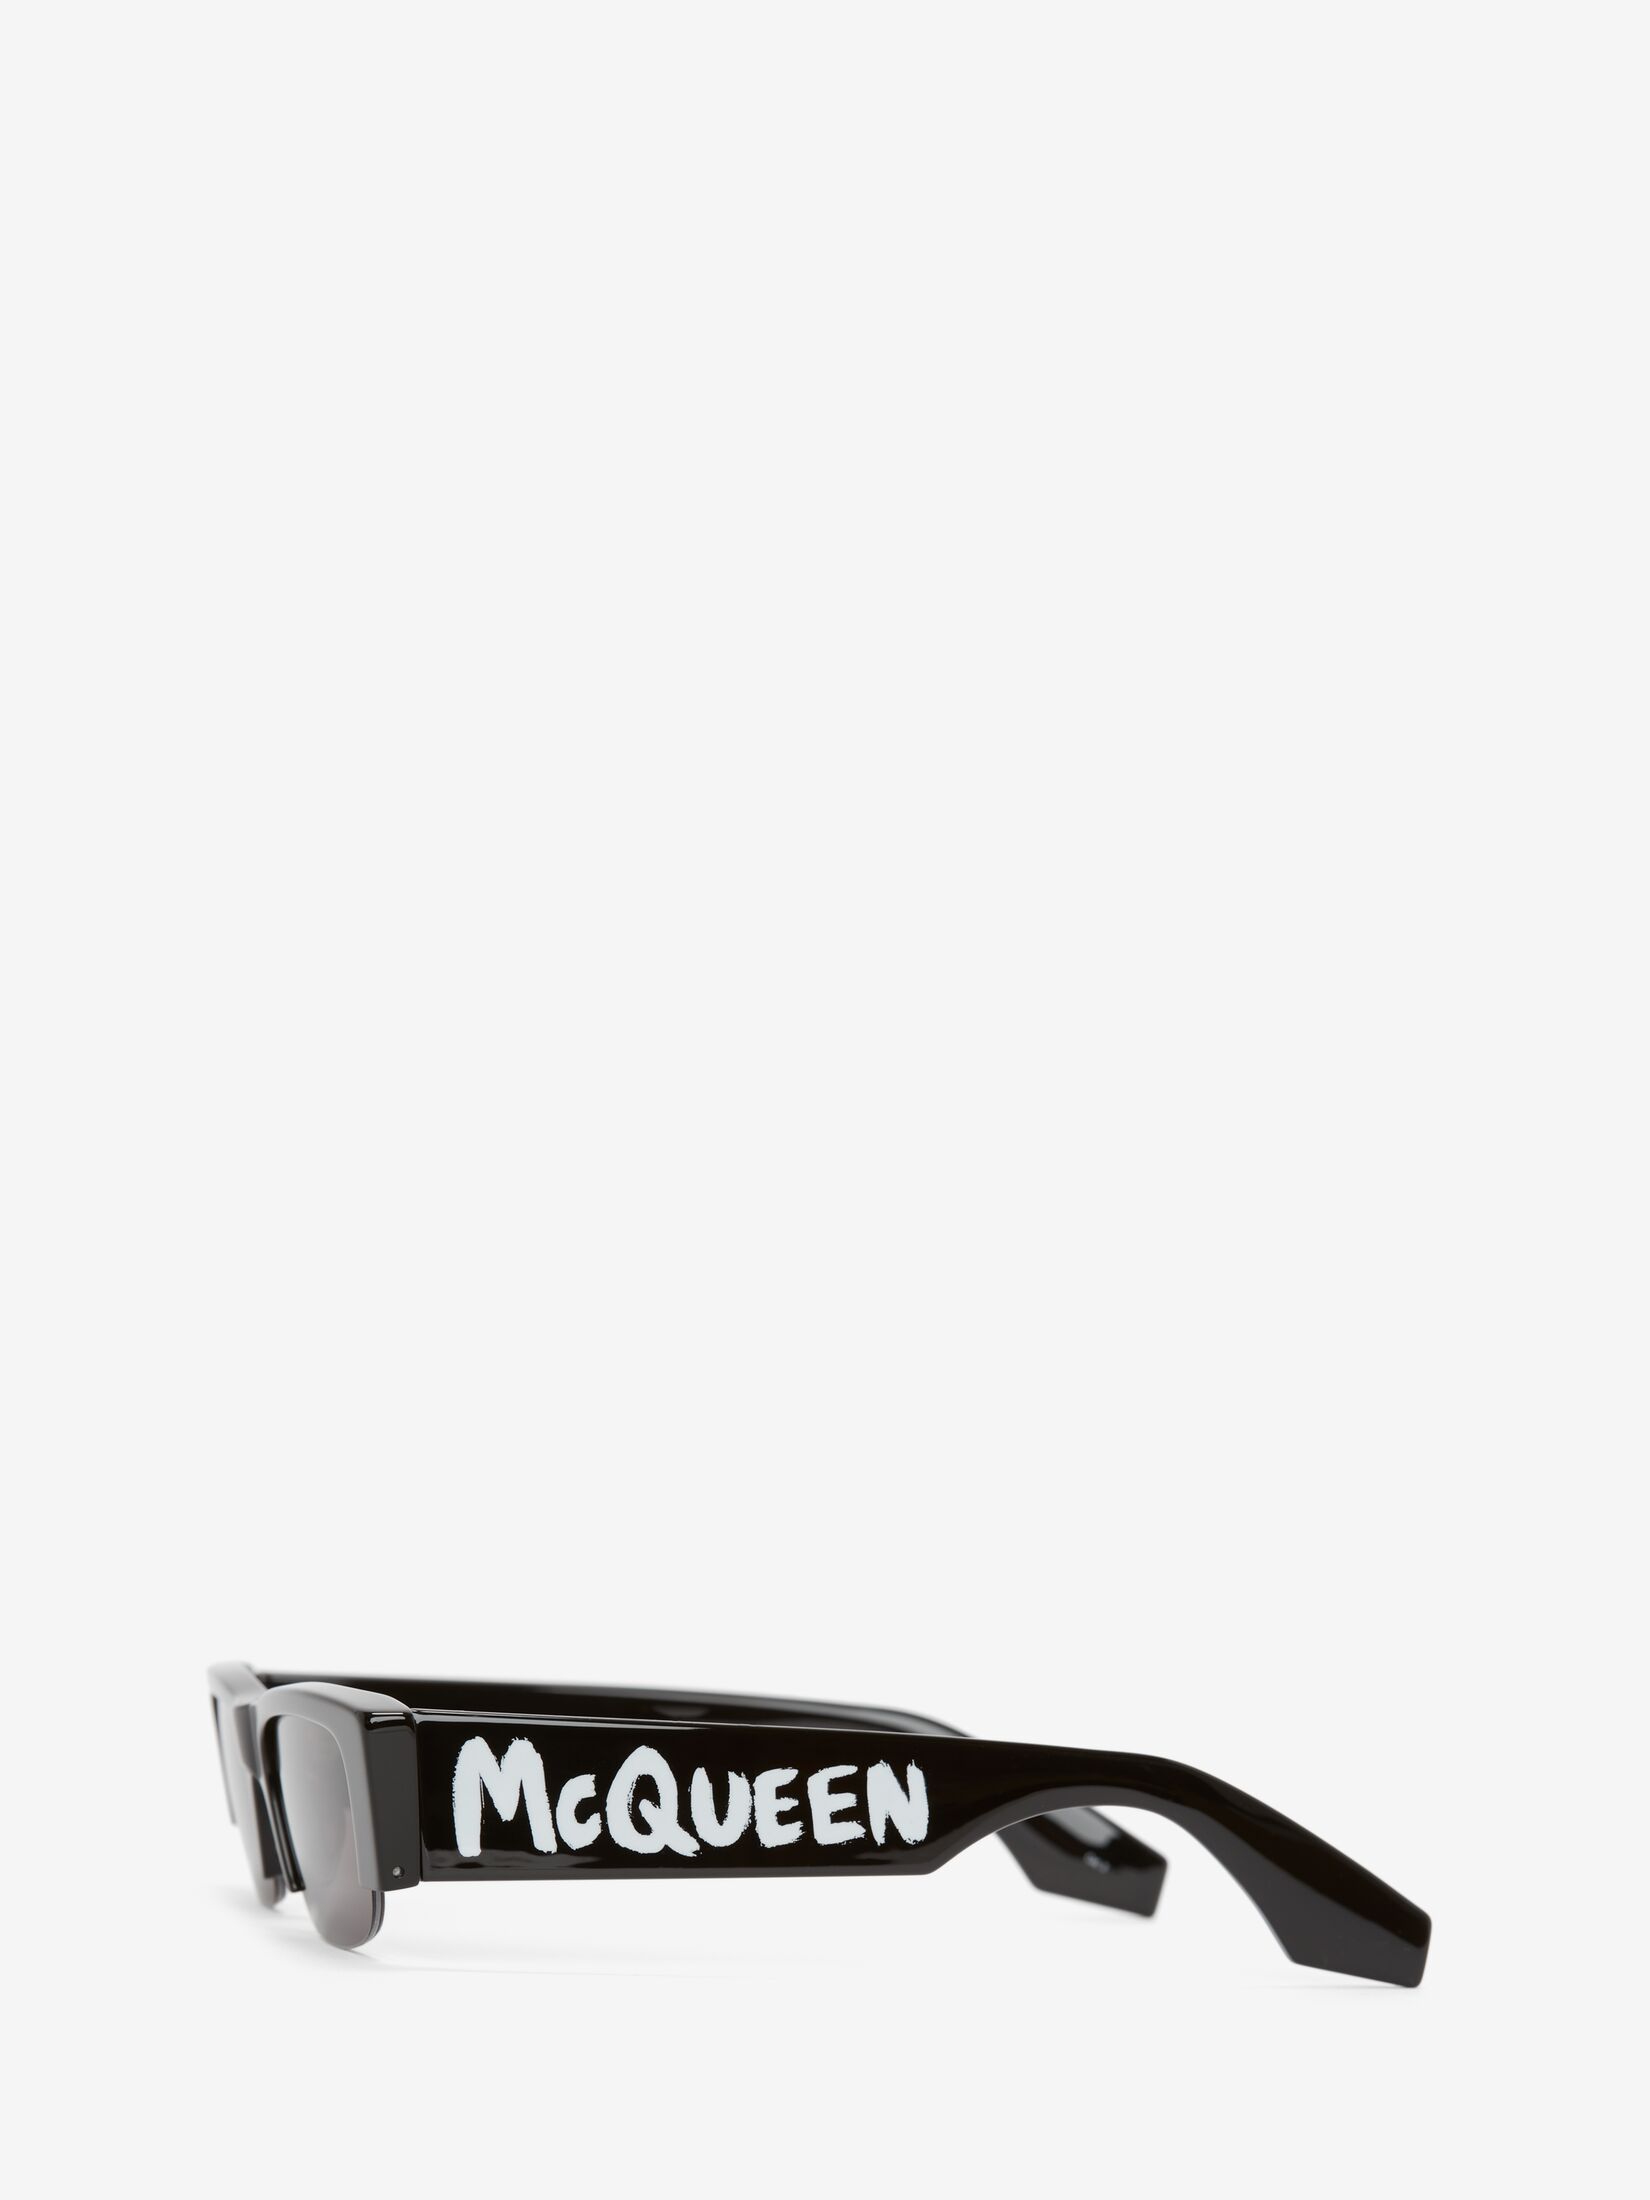 McQueen Graffiti Slashed Sunglasses